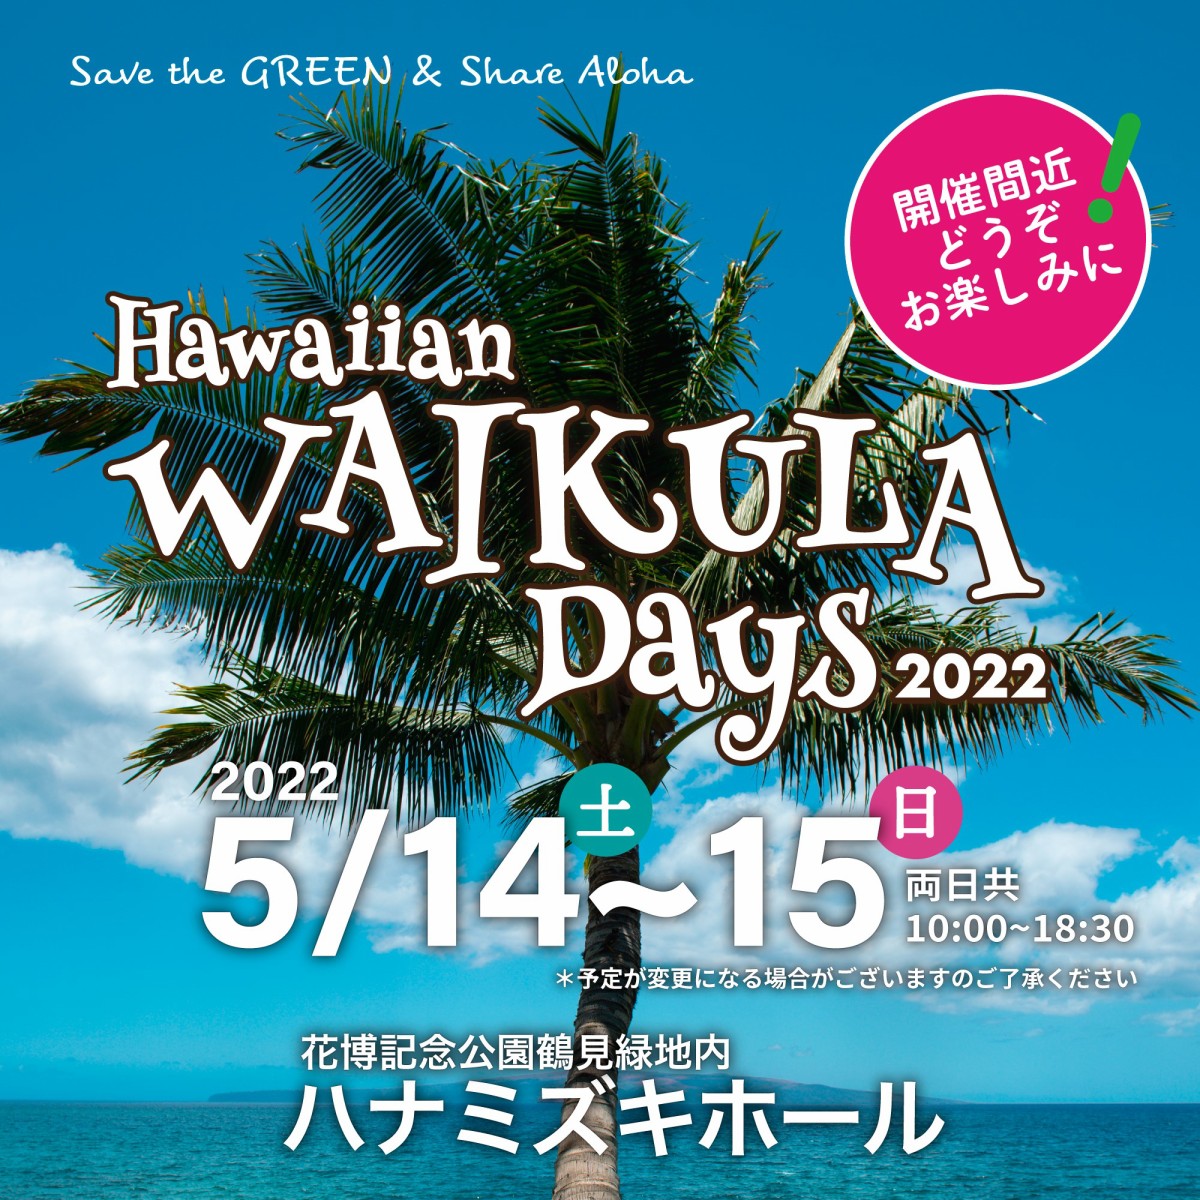  Hawaiian WAI KULA Days 2022